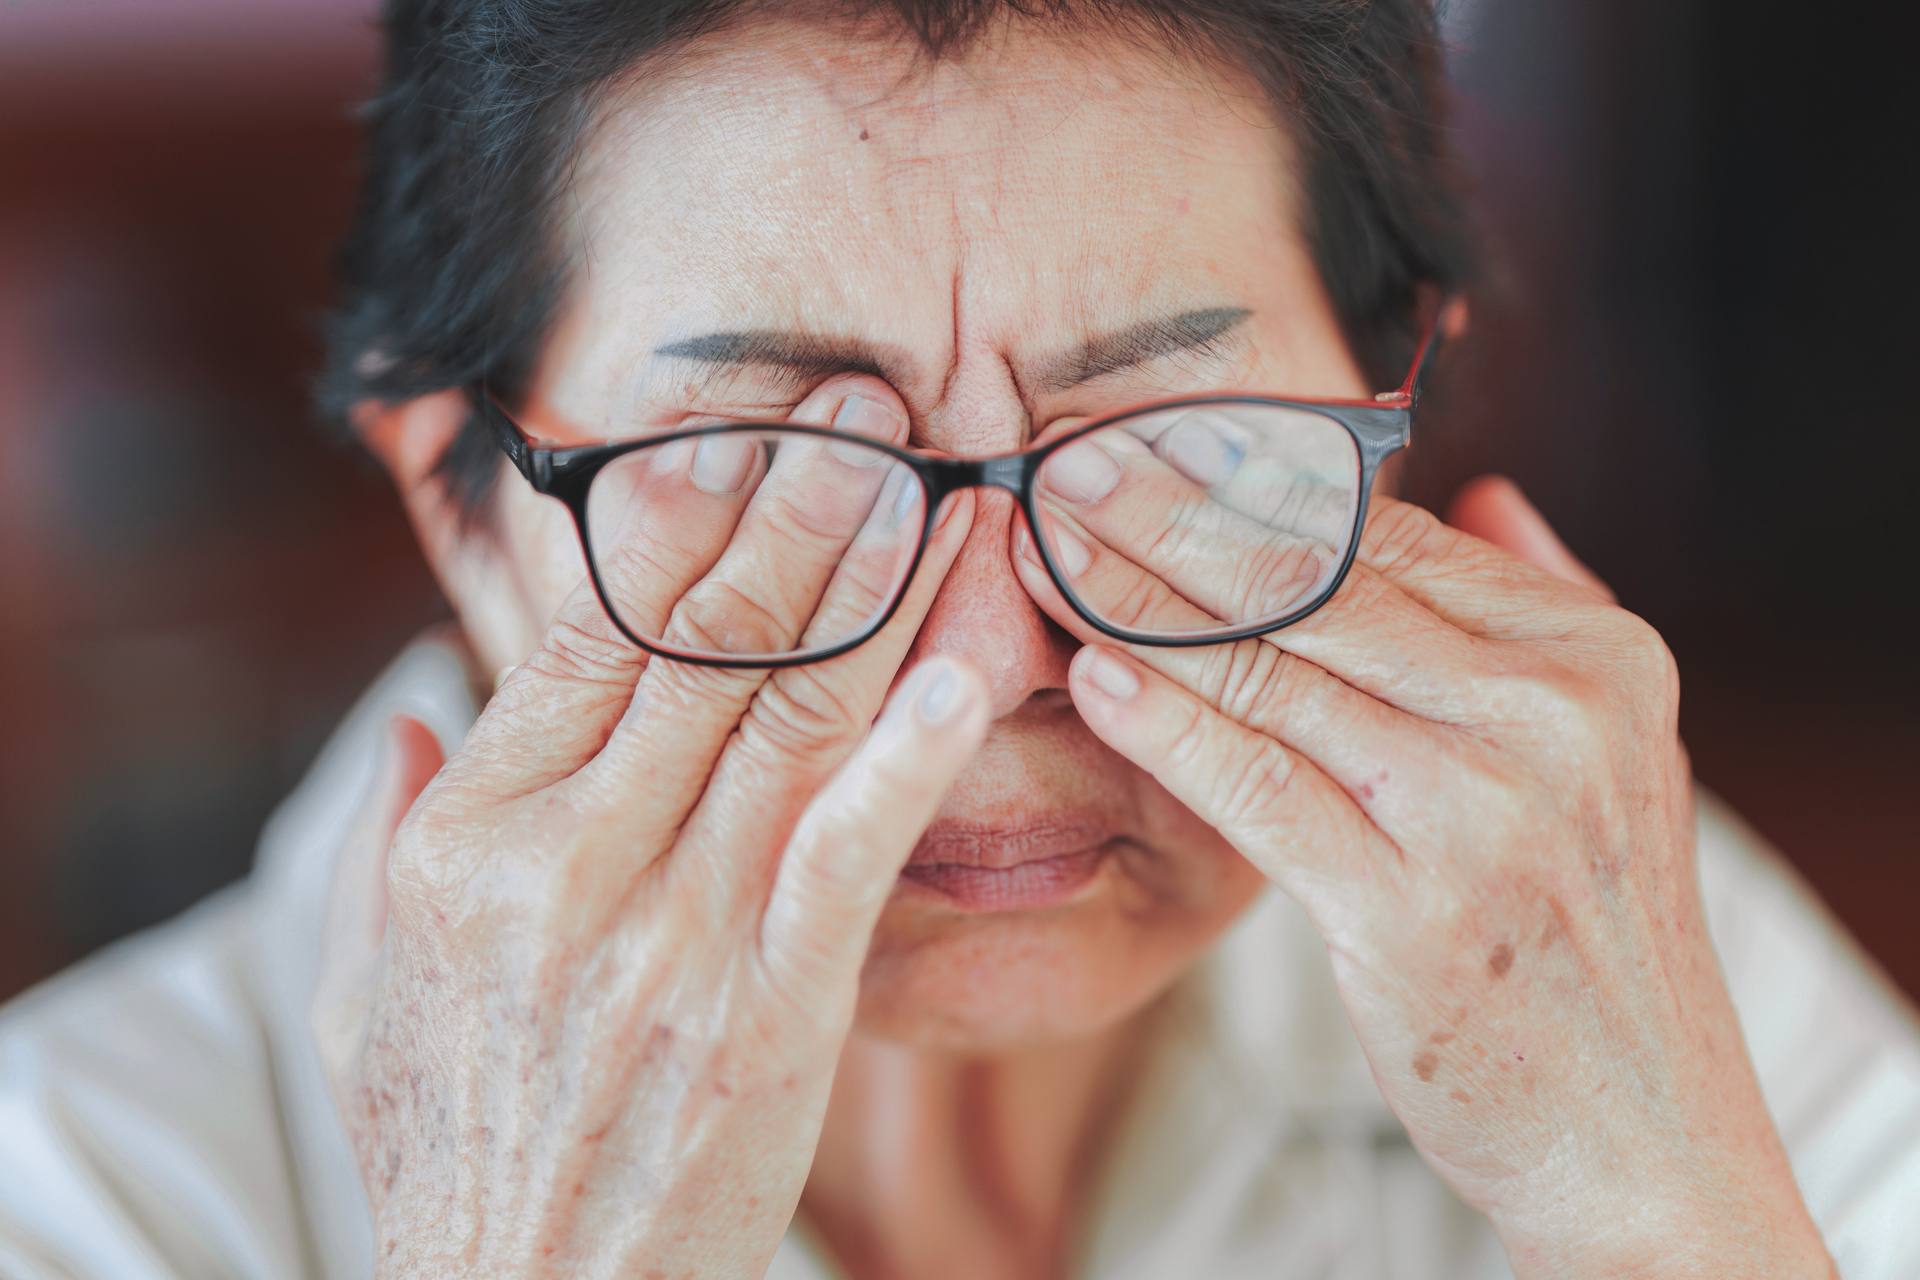 Na tym obrazku widzimy kobietę z chorobą immunologiczną oczu, która może wpływać na jej zdrowie wzrokowe i ogólną kondycję. Choroby immunologiczne oczu, takie jak zespół Cogana i zespół Sjögrena, mogą powodować różne objawy, w tym zapalenie, suchość, zaczerwienienie oraz problemy z widzeniem. Ważne jest odpowiednie leczenie i opieka medyczna, aby pomóc kobiecie w zarządzaniu tymi schorzeniami i minimalizowaniu ich wpływu na jej życie